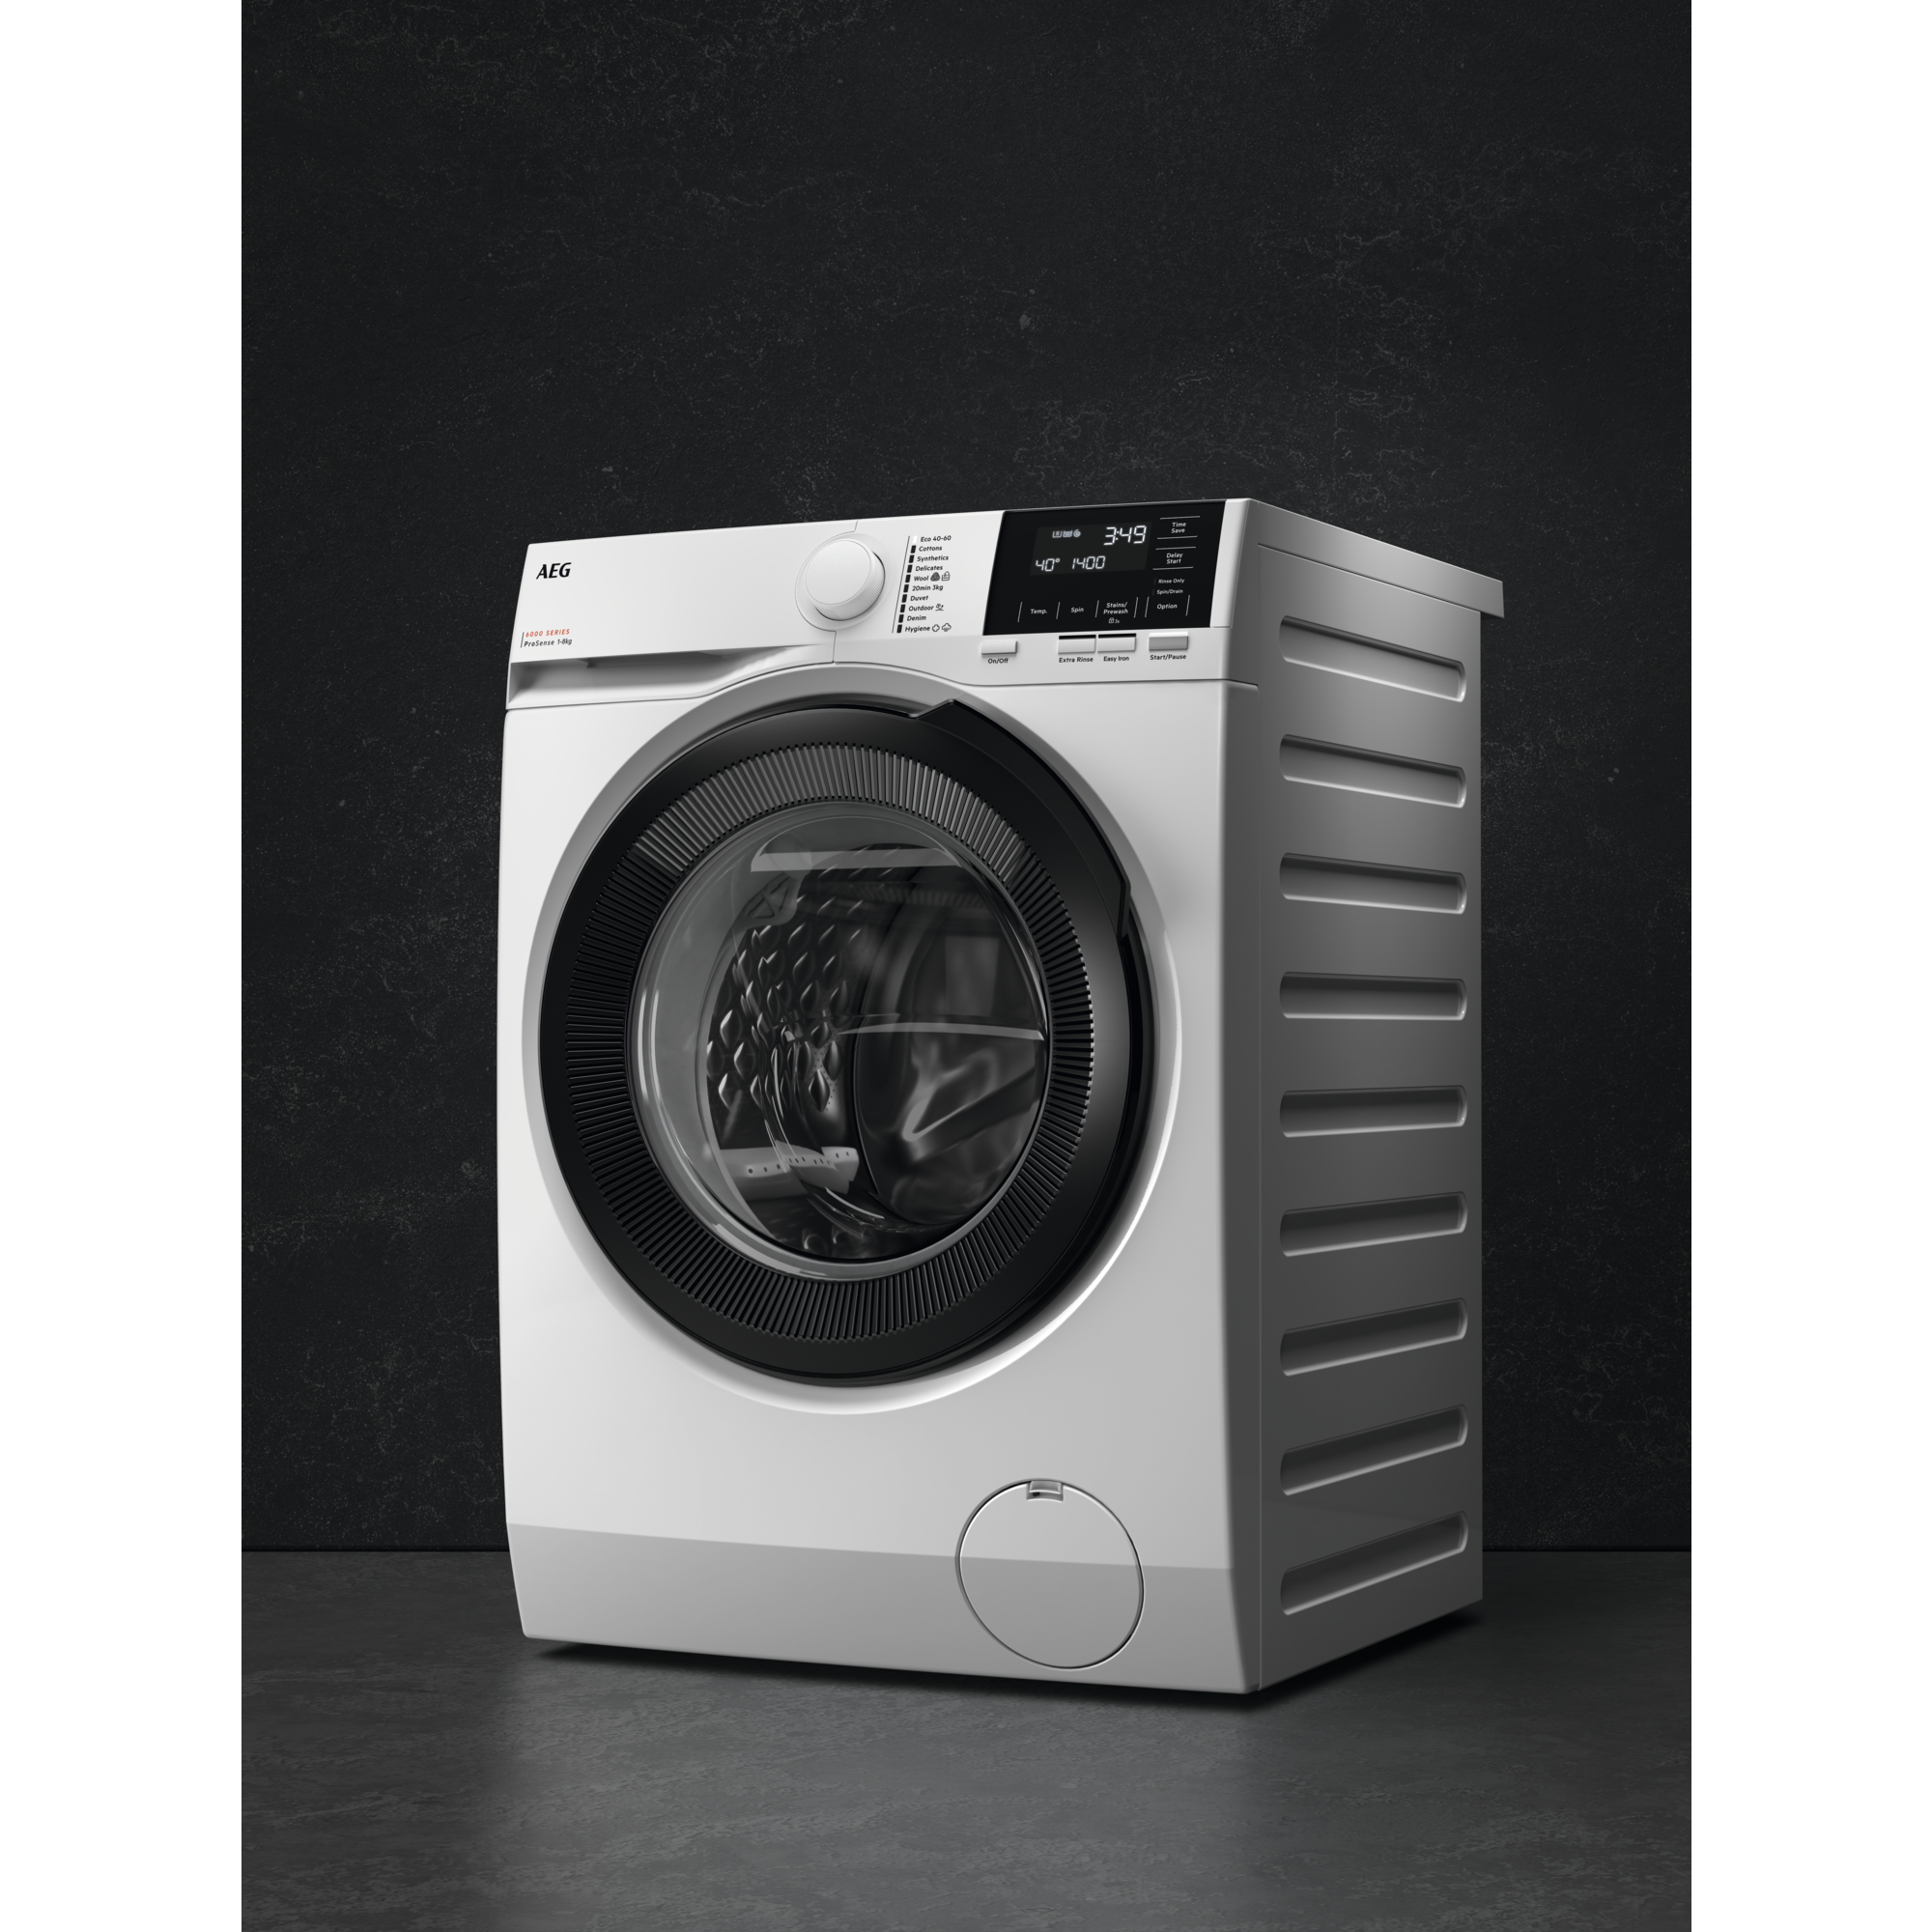 AEG LR6F60409 Waschmaschine / Serie 6000 mit ProSense® / 10,0 kg / Leise / Mengenautomatik / Nachlegefunktion / Kindersicherung / Schontrommel / Wasserstopp / 1400 U/min